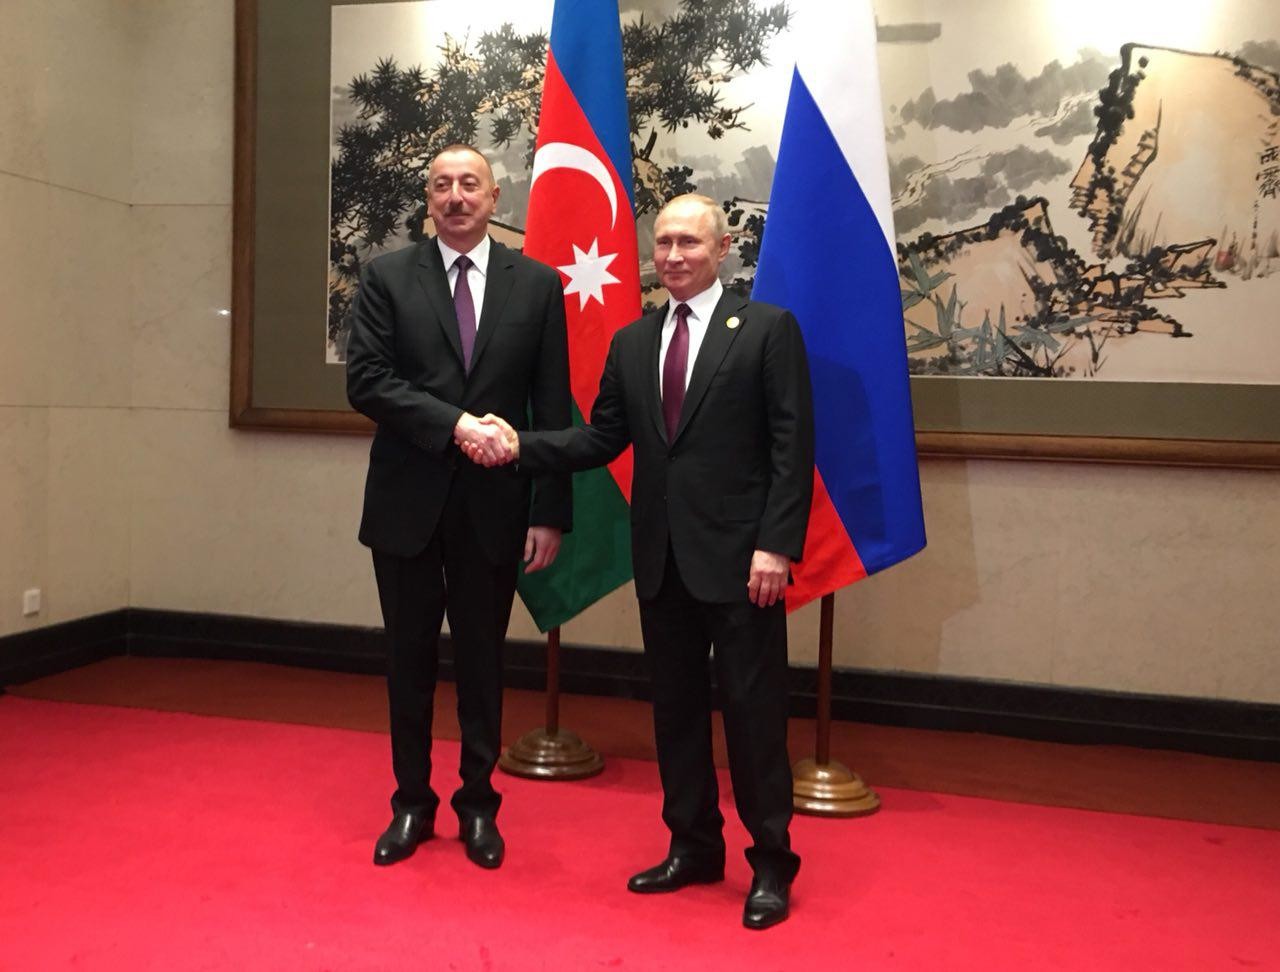 Ильхам Алиев и Владимир Путин. Фото: © L!FE/Павел Баранов
